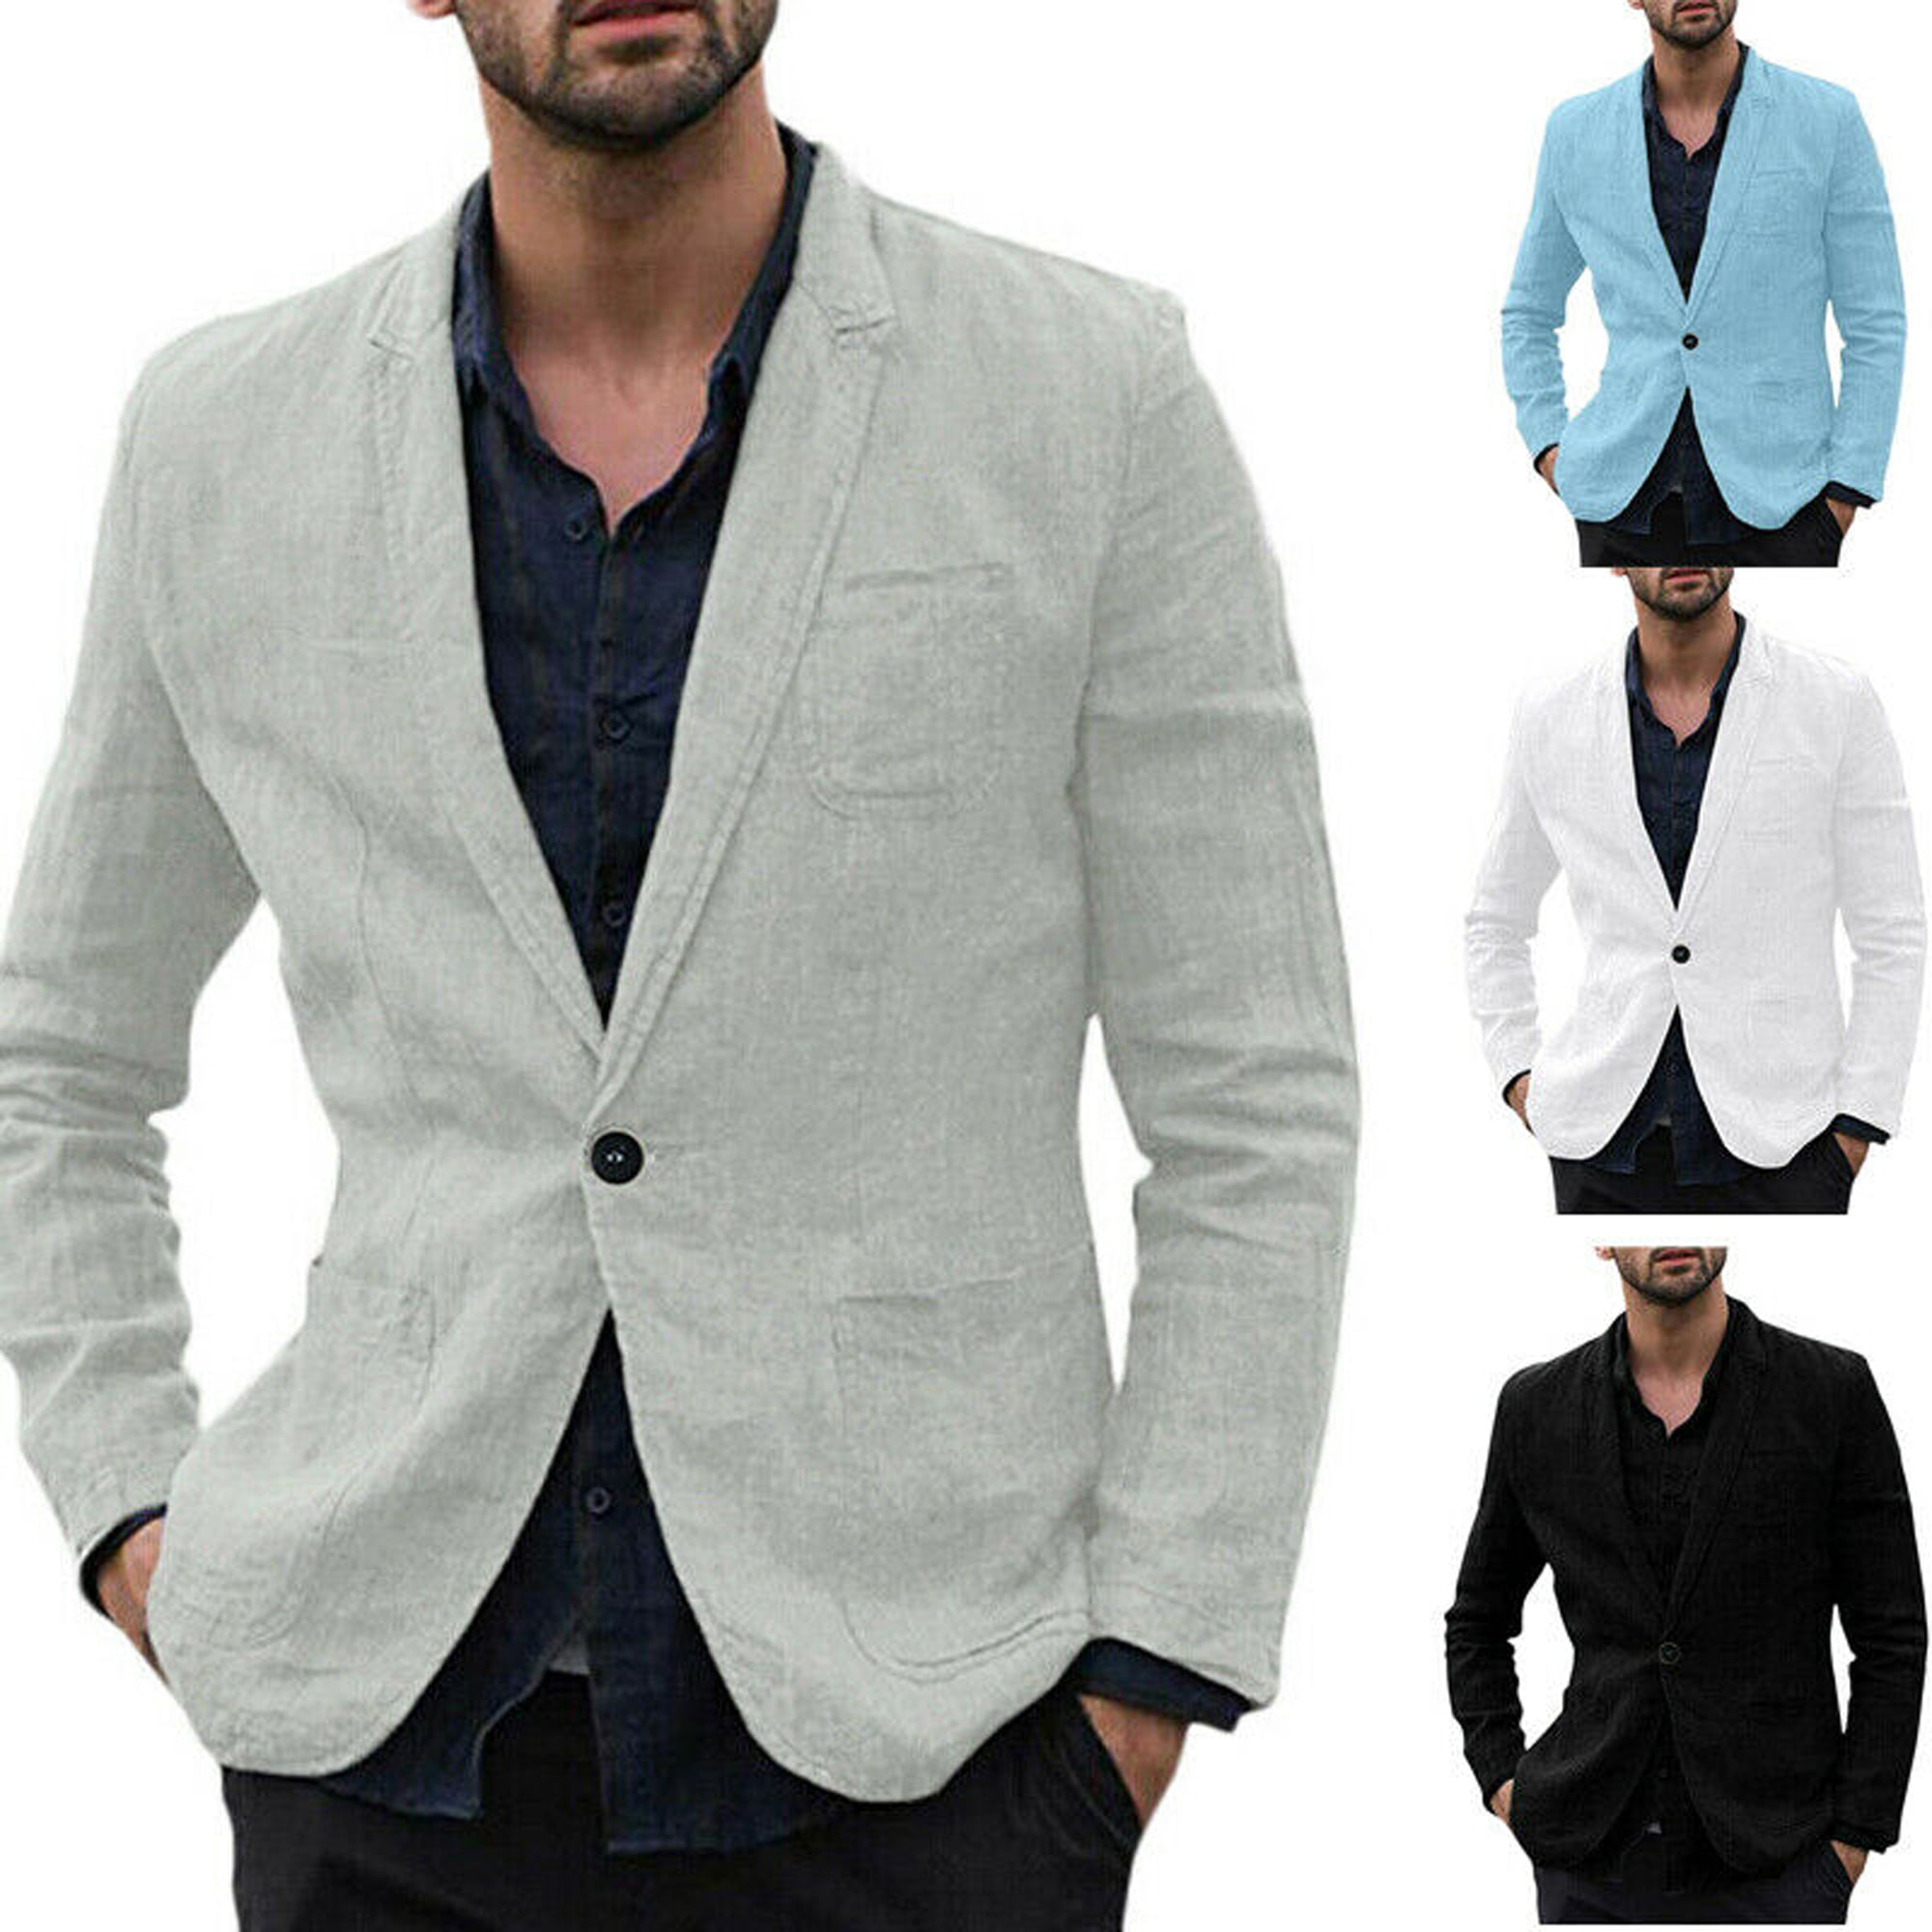 Men's Suits Coats 2021 Fashion Casual Jacket One Button Fit Suit Coat Jacket Sequin Lapel Party Tops